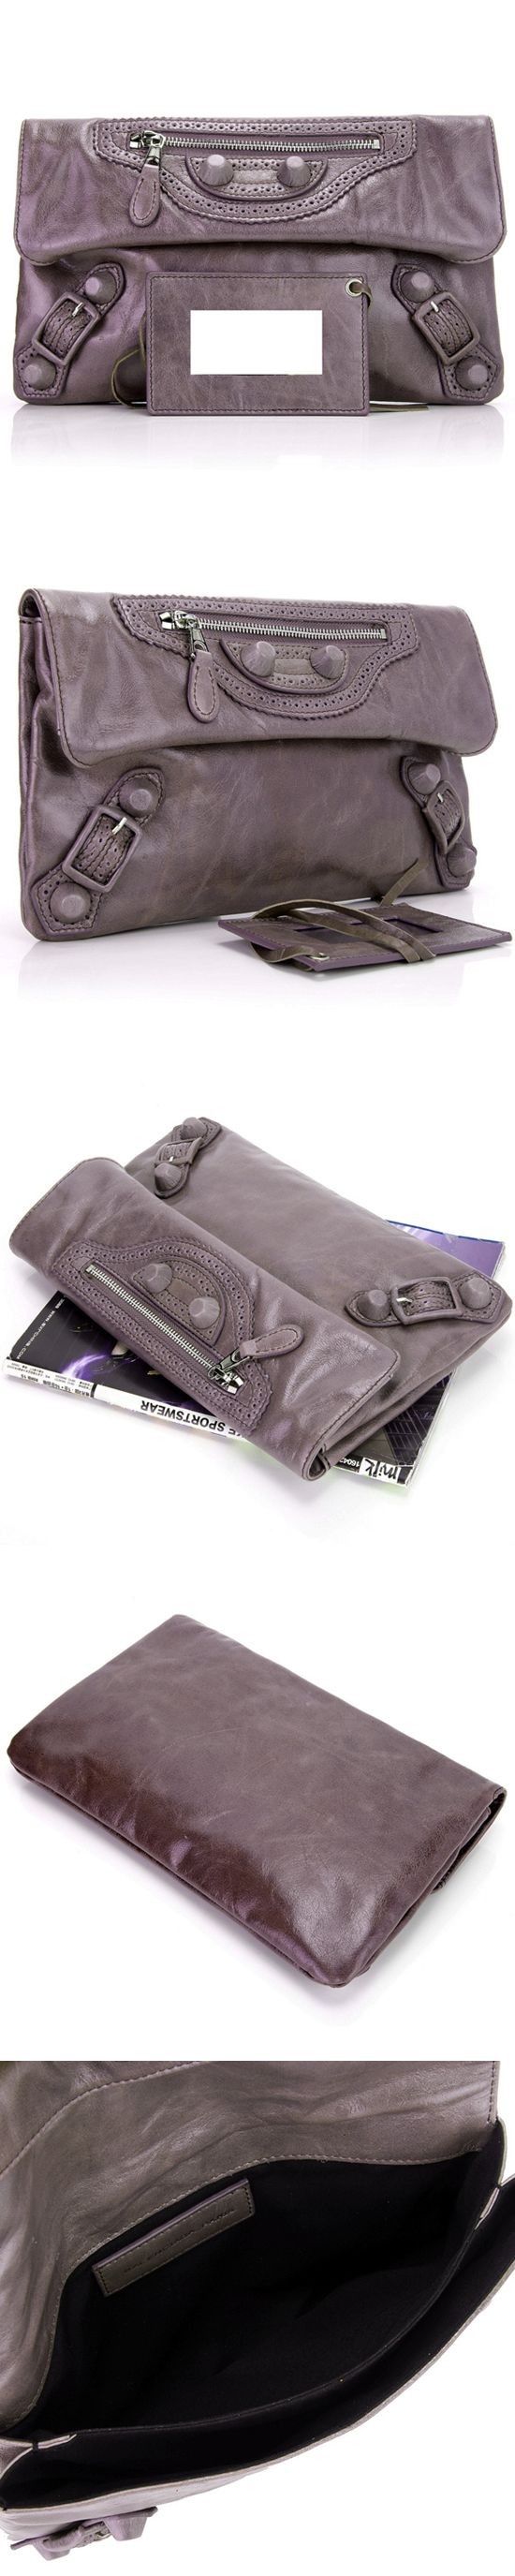 ブランド通販BALENCIAGA-バレンシアガ-330-Leather-Purple-グレー激安屋-ブランドコピー